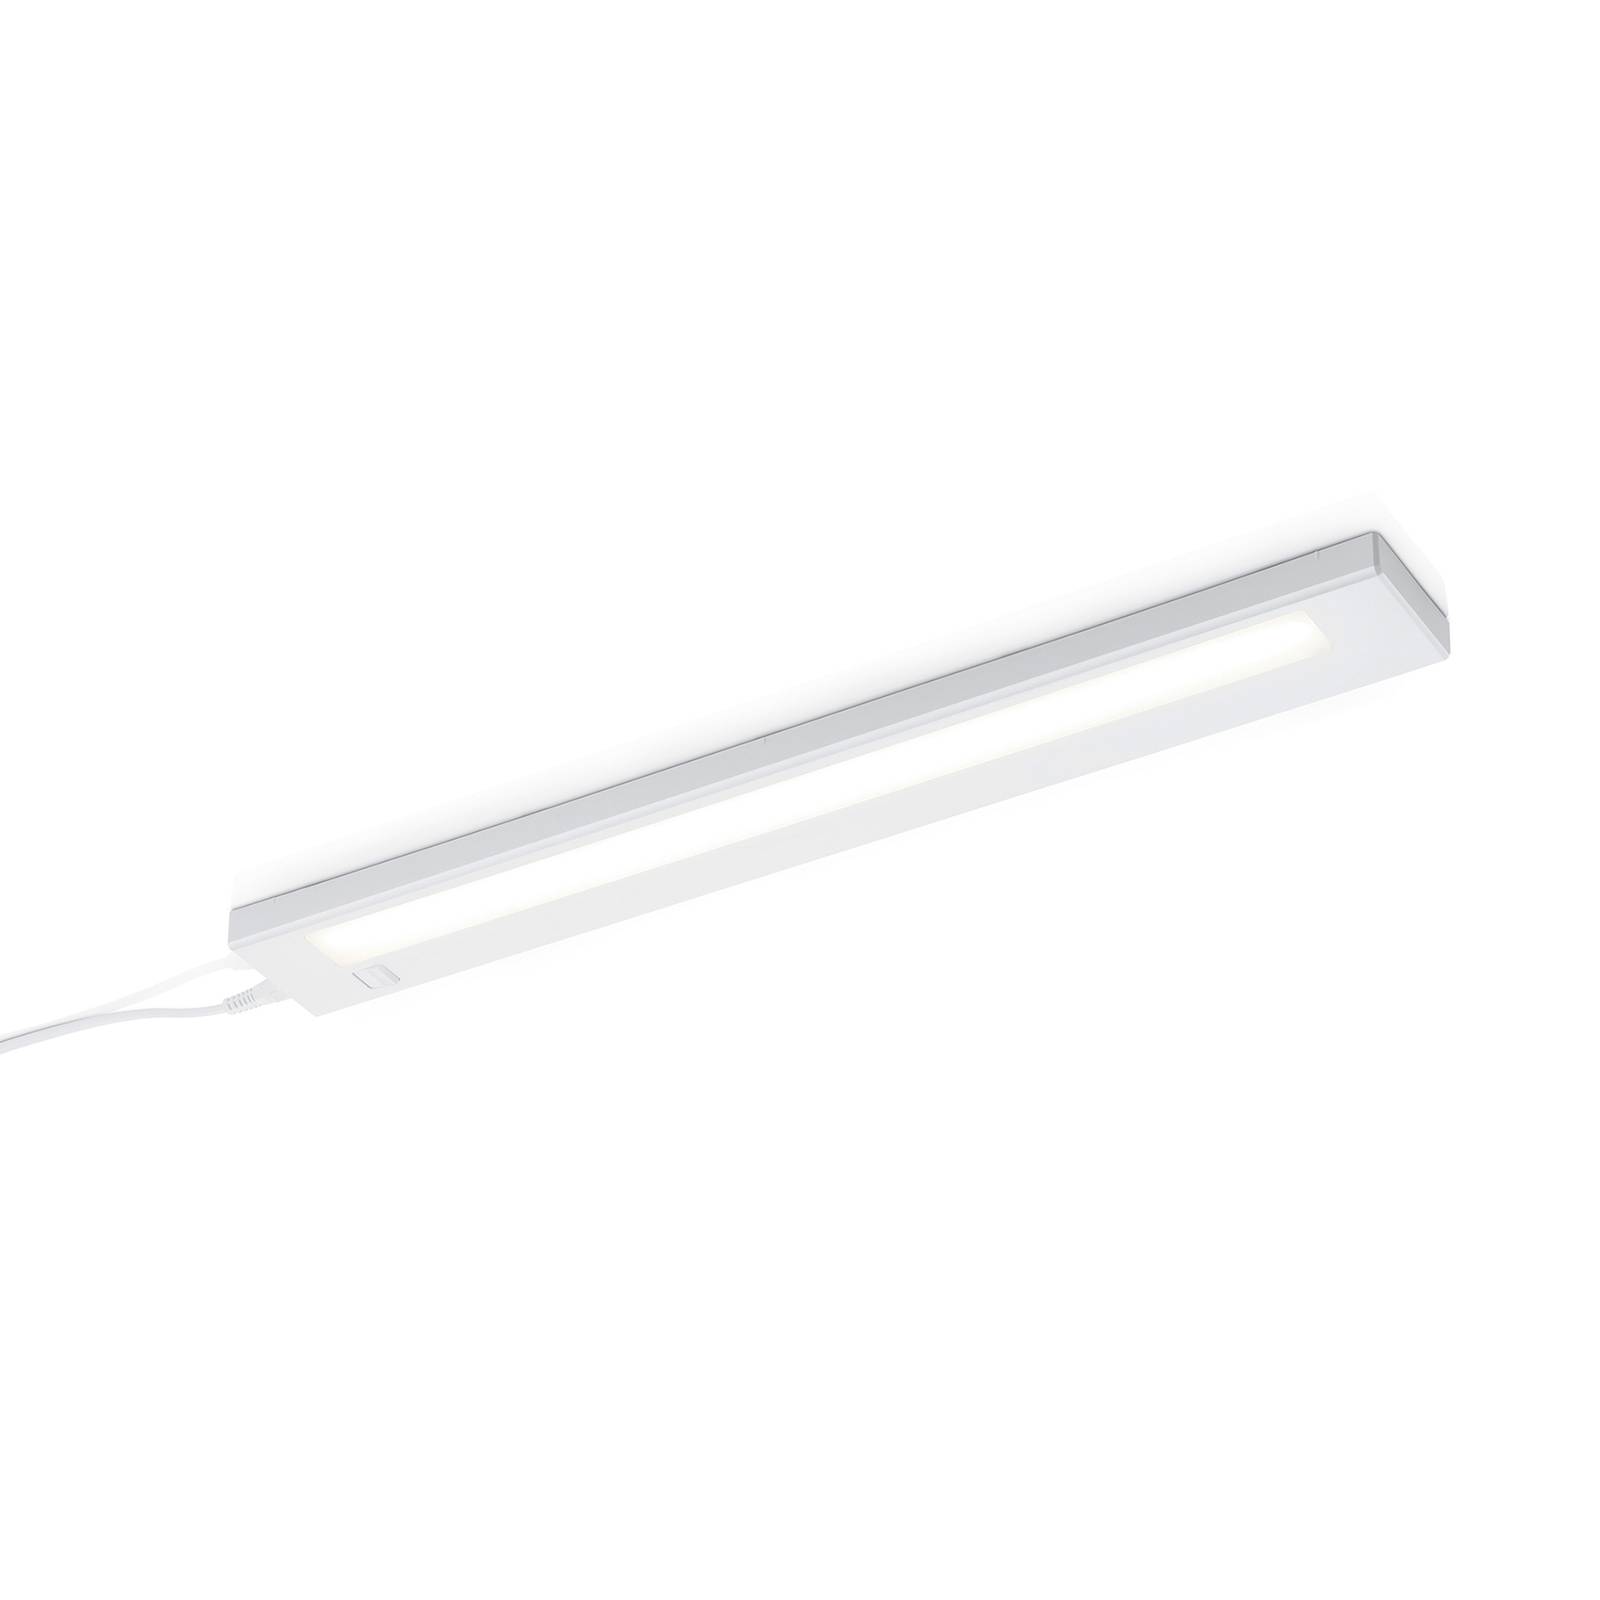 Trio Lighting LED-Unterbauleuchte Alino, weiß, Länge 55 cm